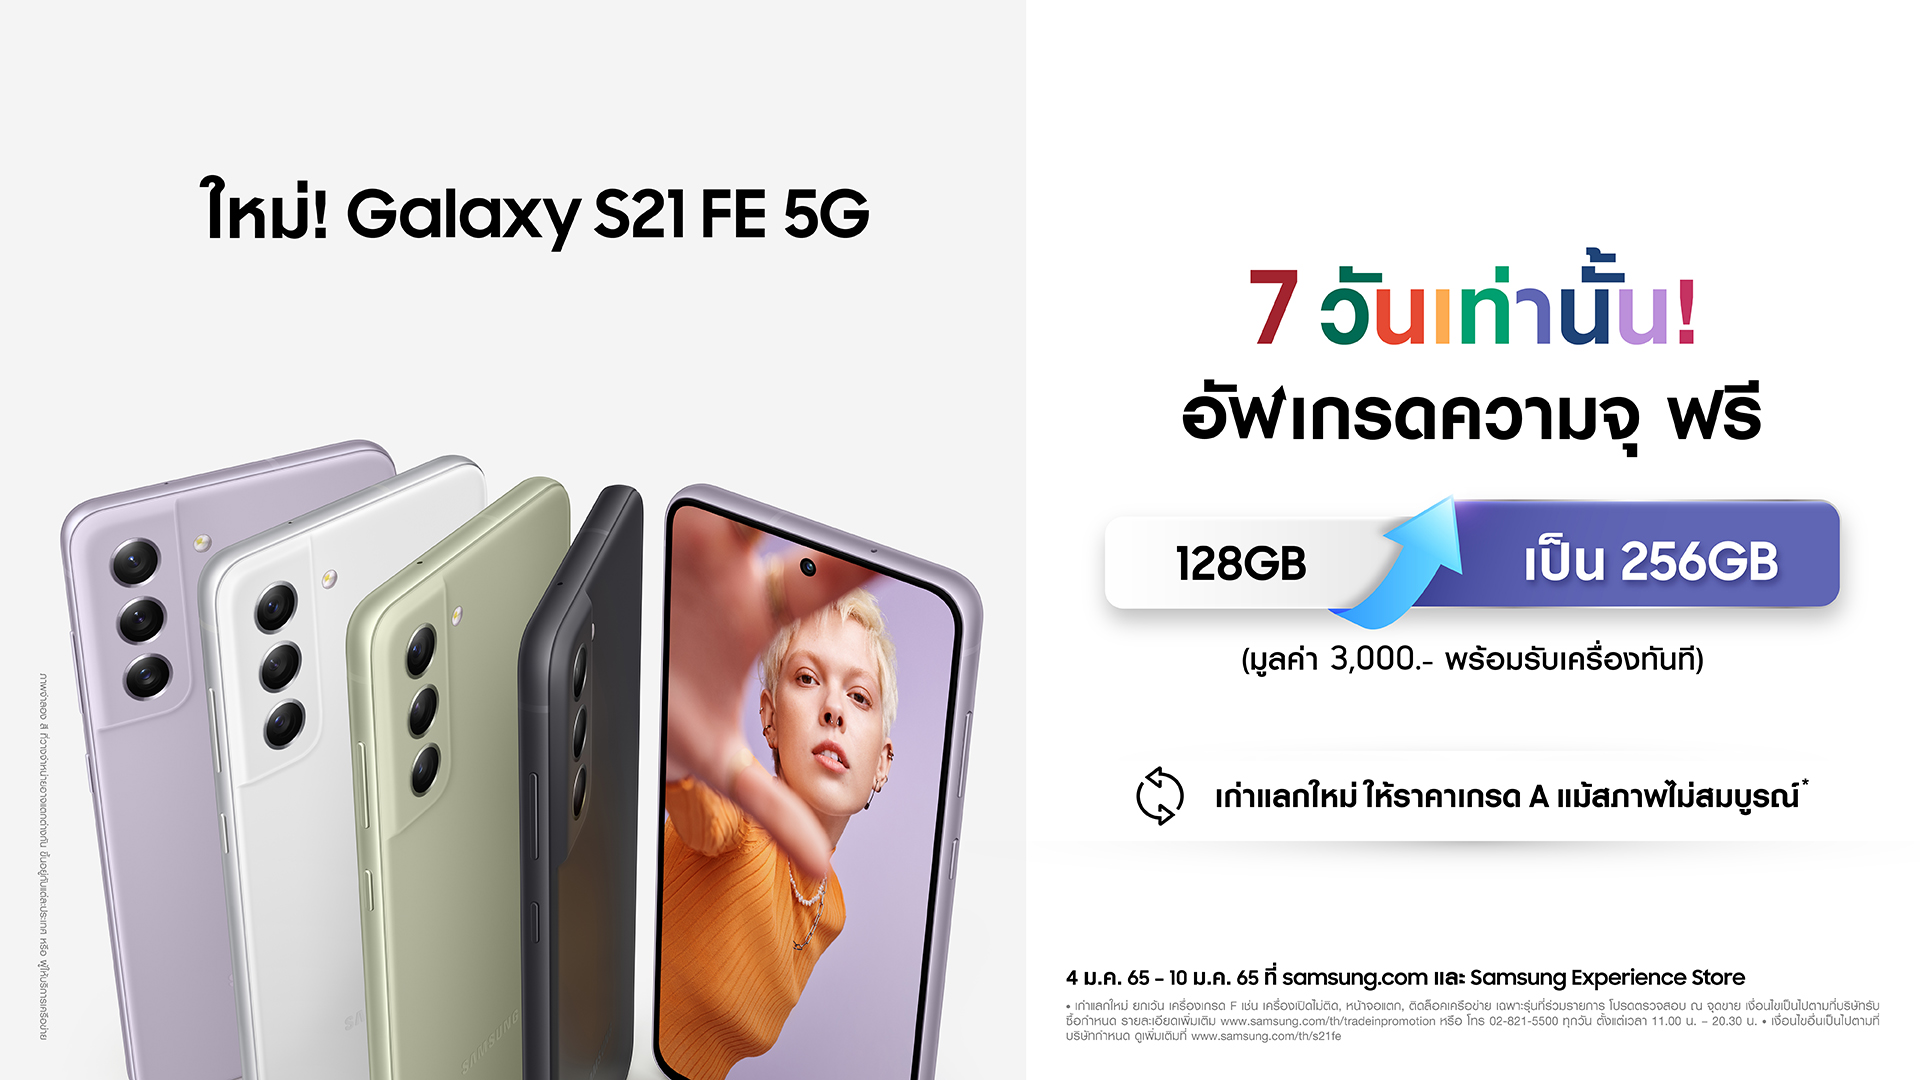 Galaxy S21 FE Early Bird Promotion | Galaxy S21 FE 5G | ซัมซุงเปิดตัว Galaxy S21 FE 5G เอาใจแฟน แน่นด้วยฟีเจอร์ยอดนิยมจากรุ่นแฟลกชิป ในราคา 22,900 บาท